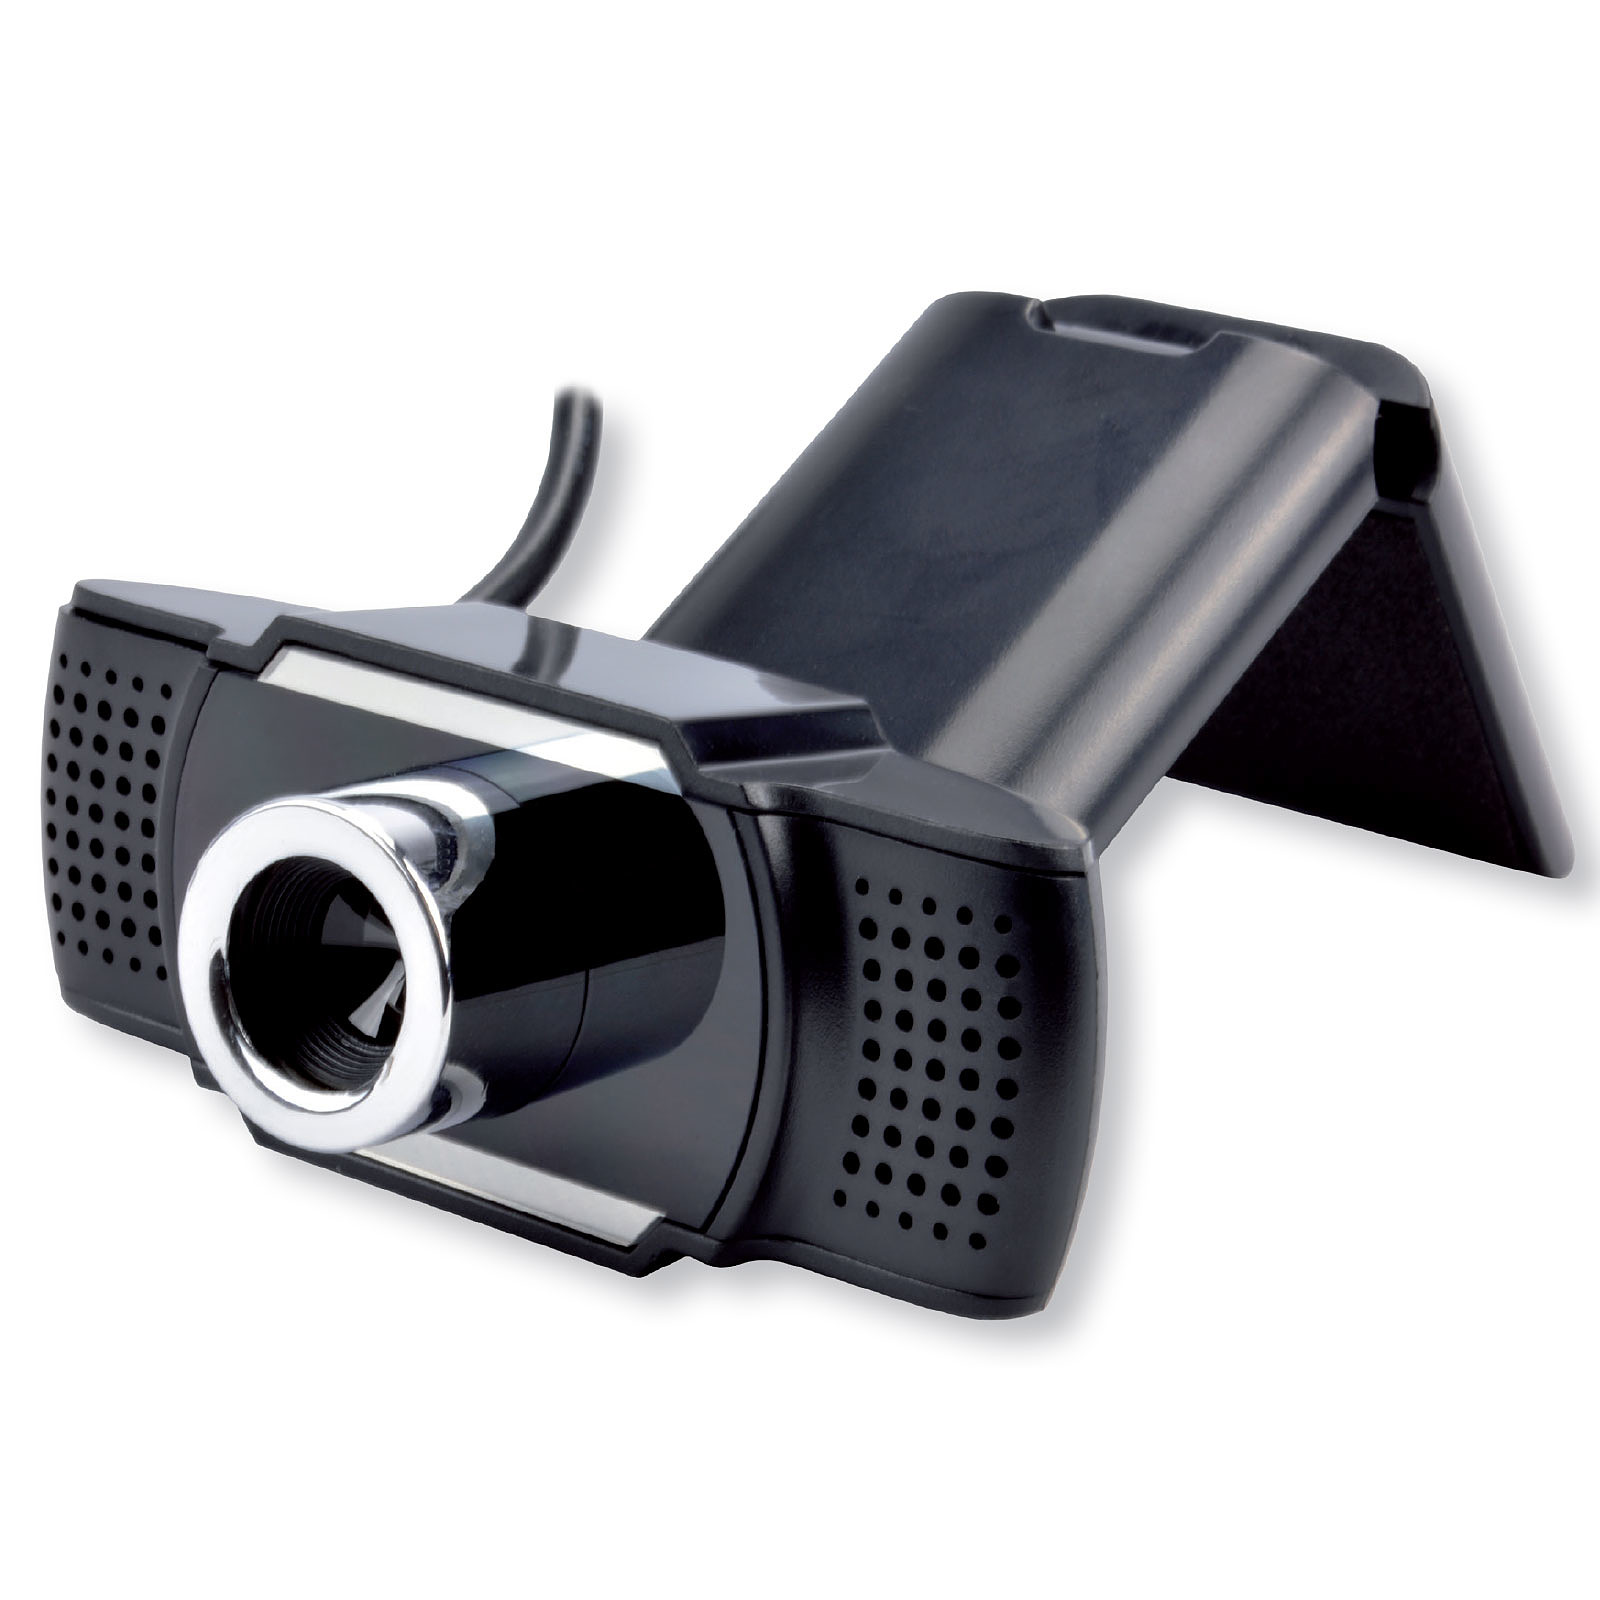 MCL Webcam HD 720P - Webcam MCL